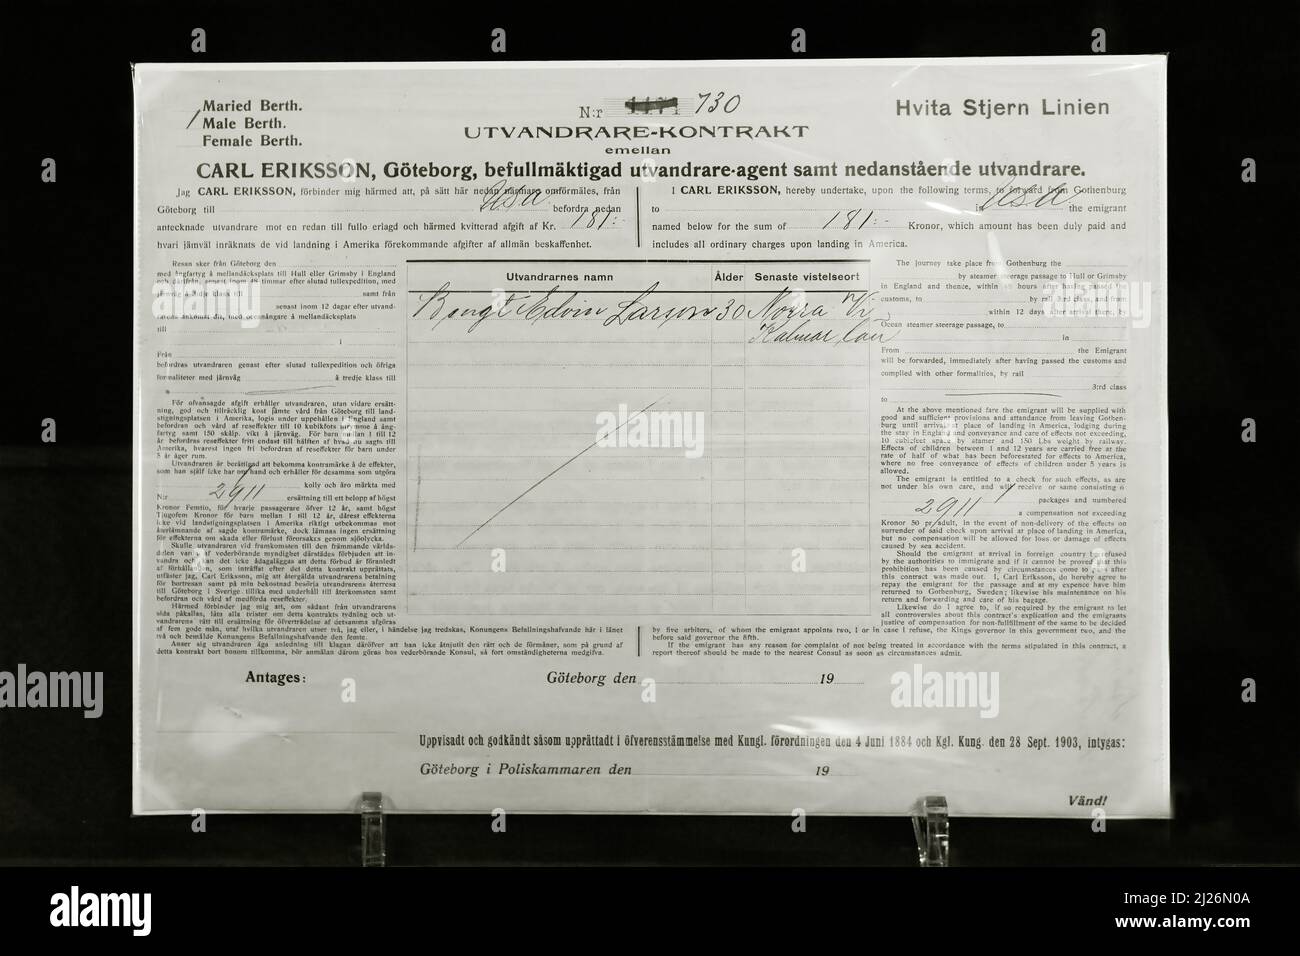 Billet Titanic - billet de troisième classe original de Bengt Edvin Larsson ou Larssen de Suède, passager perdu sur le Titanic ; exposition Titanic, Londres Royaume-Uni Banque D'Images